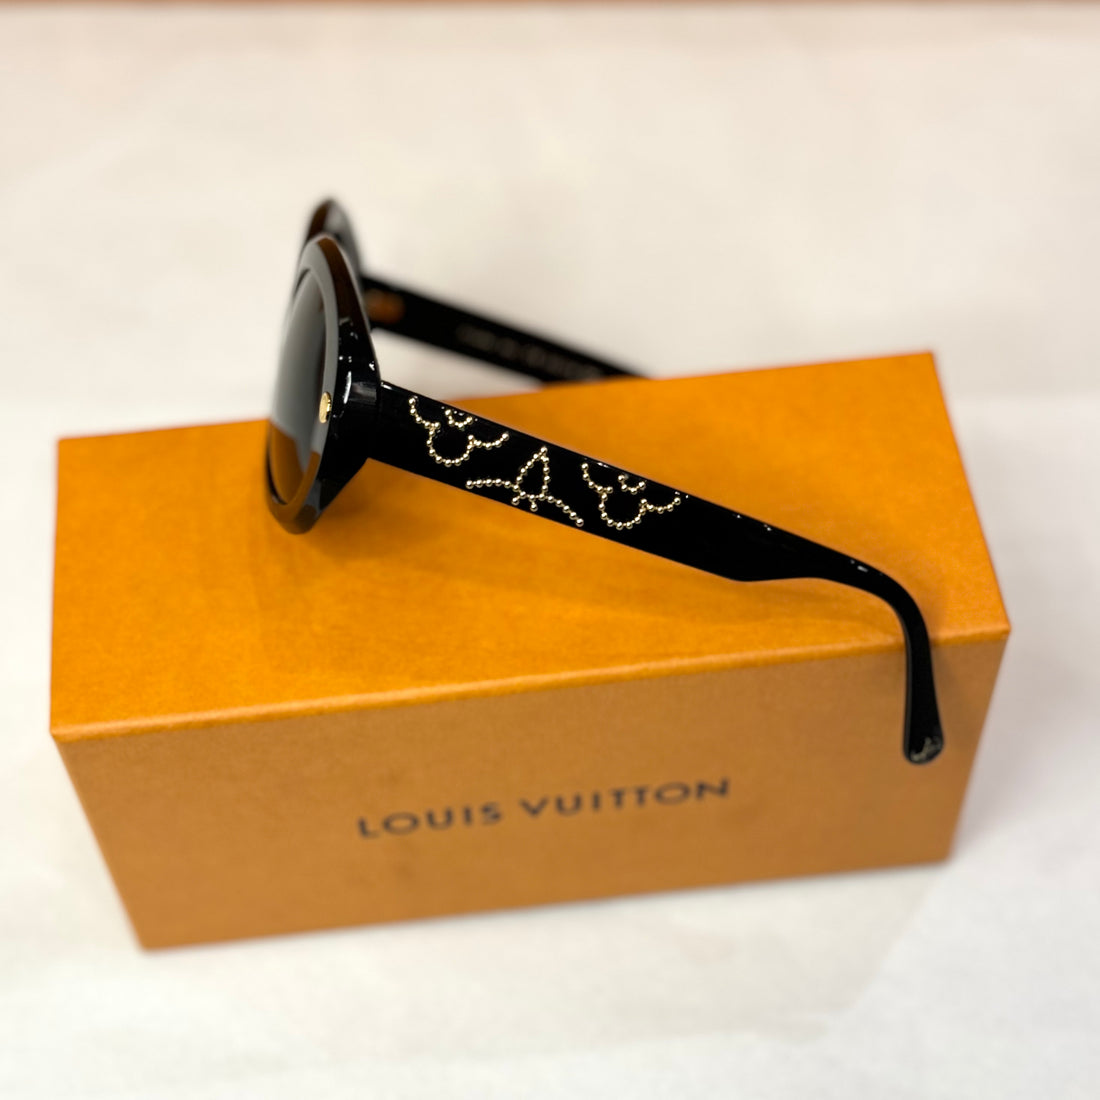 لويس فويتون - النظارات الشمسية